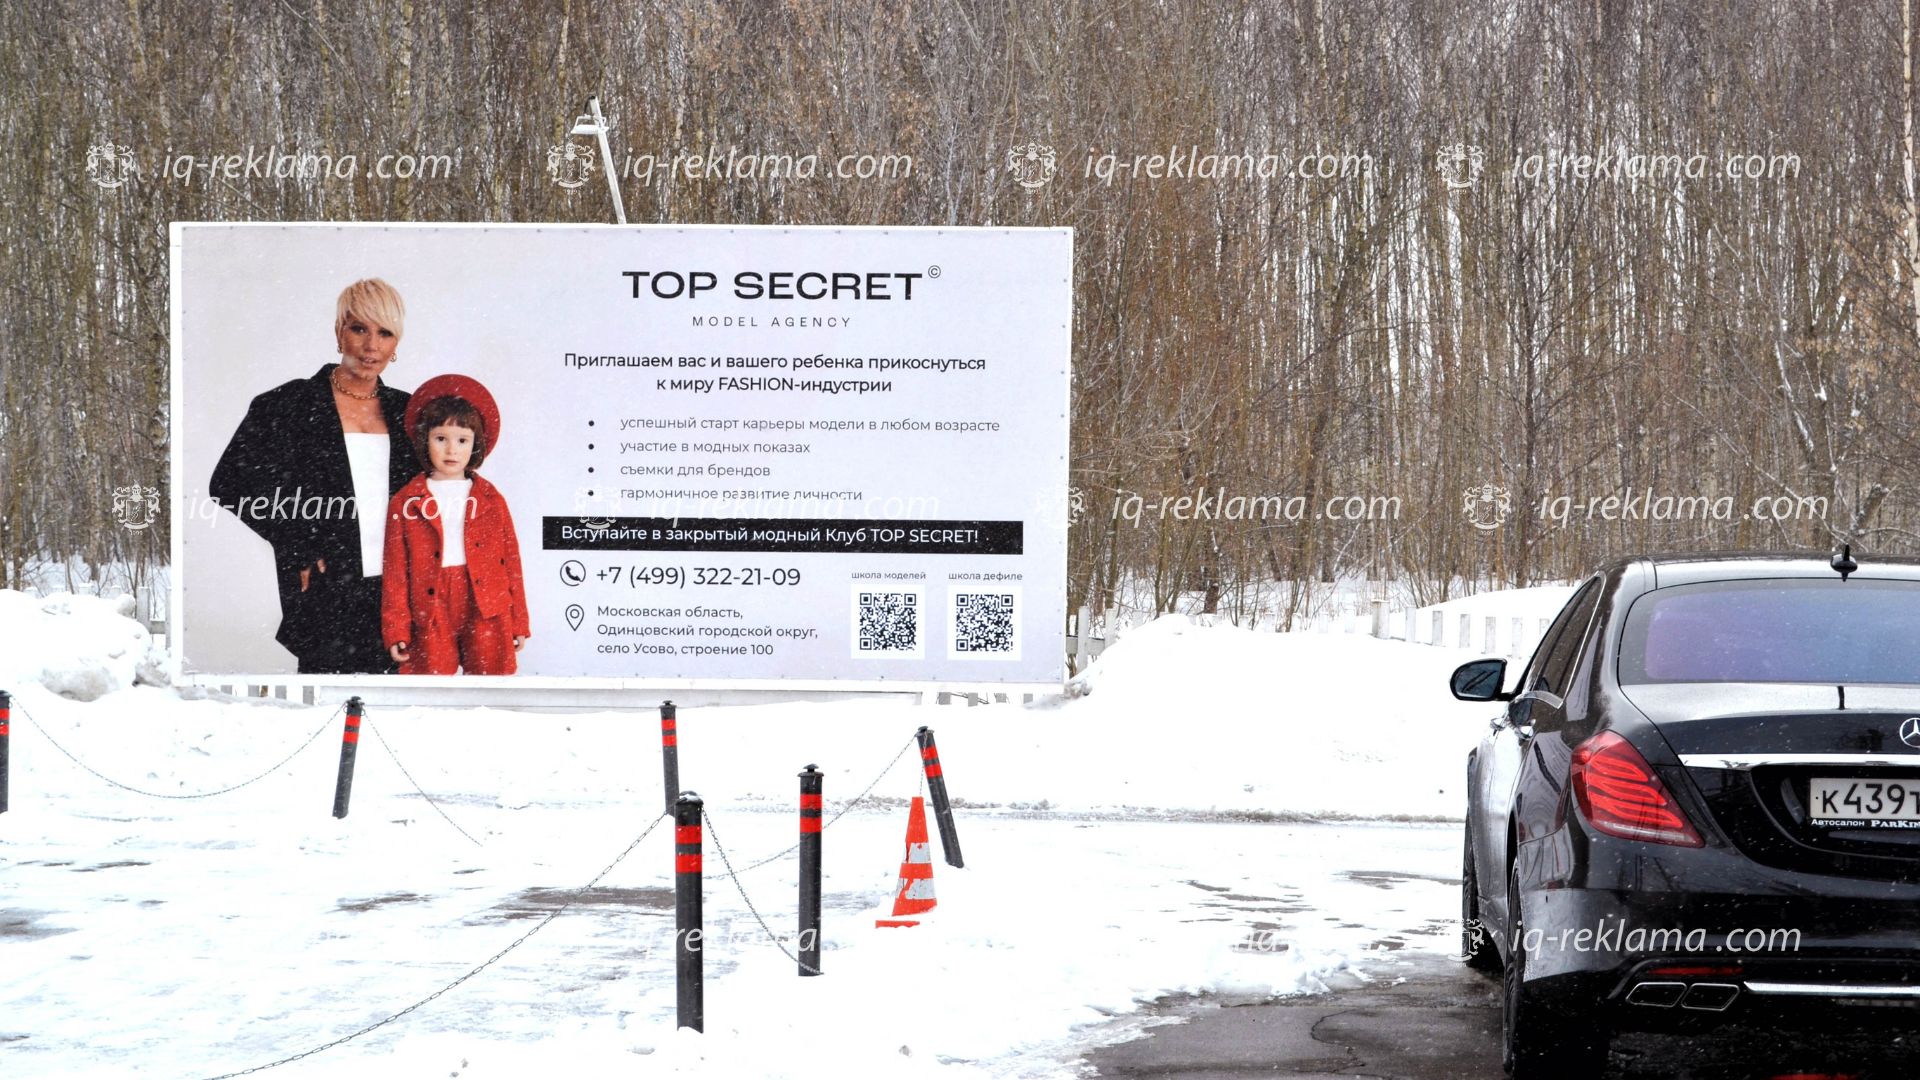 Наружная реклама в ресторане «Причал» в Москве модельного агентства Top Secret Kids